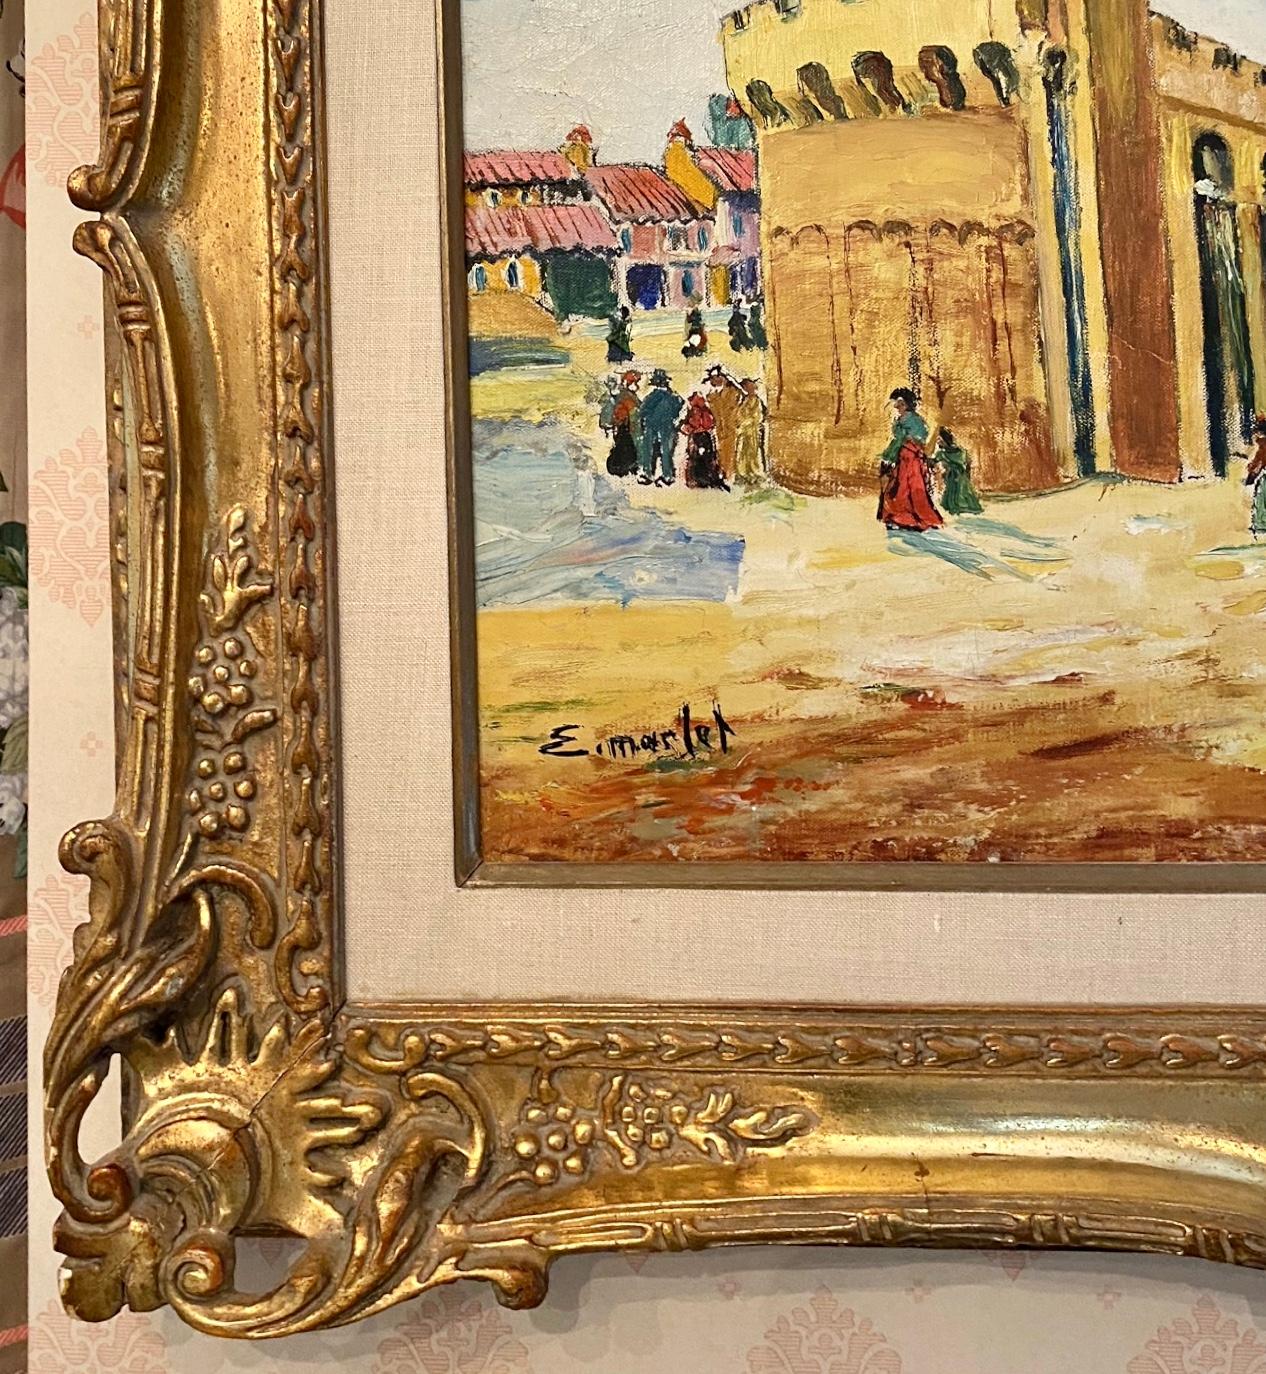 Huile sur toile signée en bas à gauche.
Elisee Maclet (1881-1962) Artiste française très bien répertoriée. Il a étudié à Paris et a été influencé par de nombreux artistes français célèbres du début du 20e siècle. 
L'œuvre mesure 17